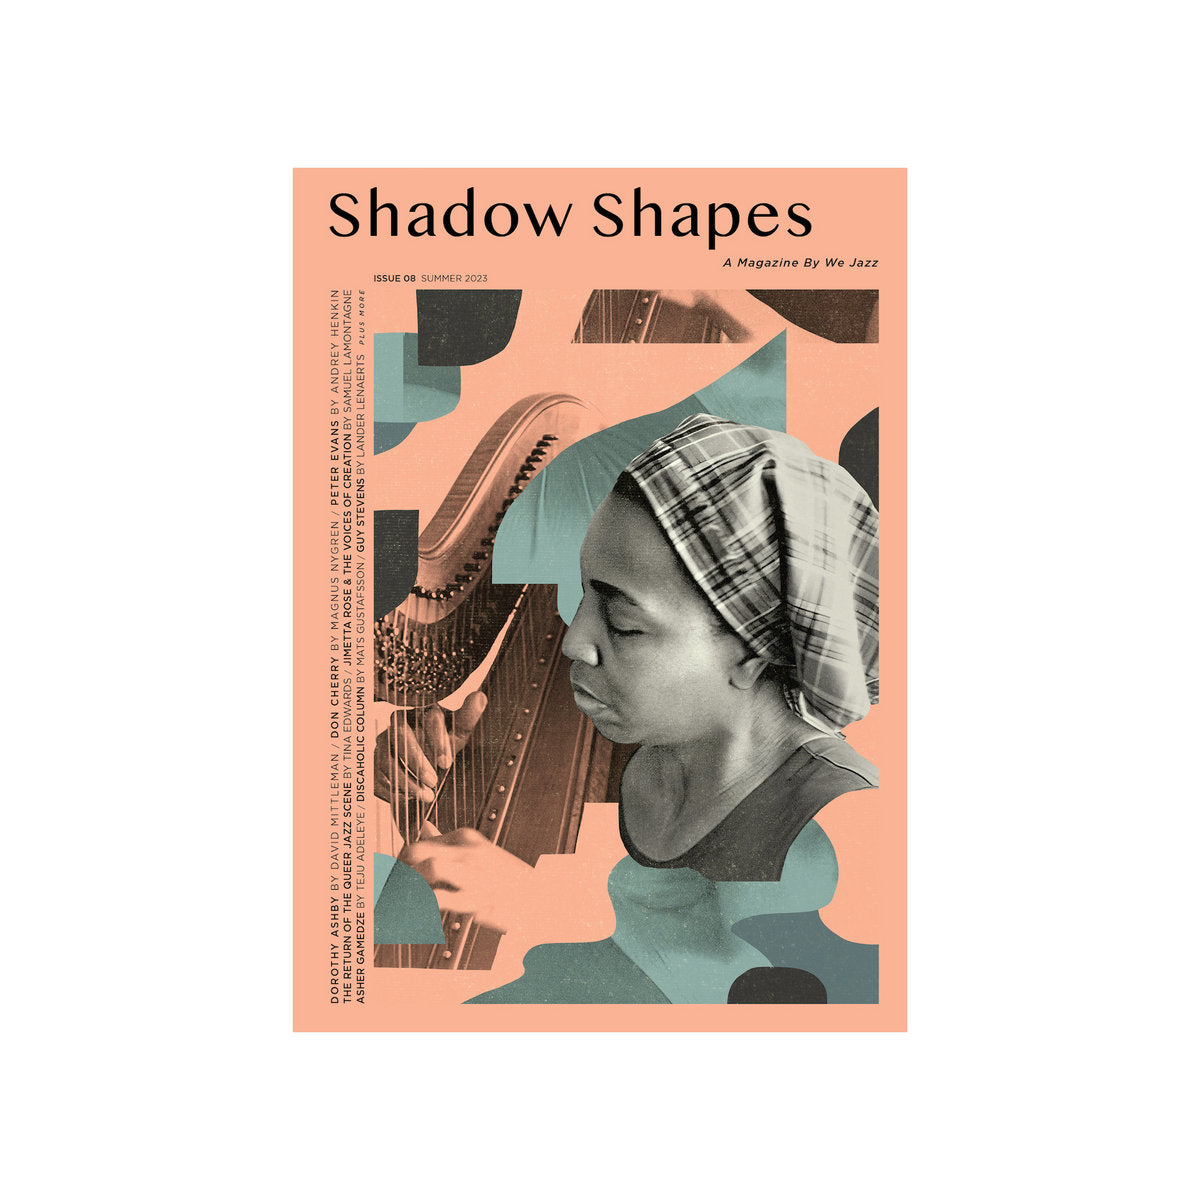 We Jazz Magazine - Issue 8: “Shadow Shapes”